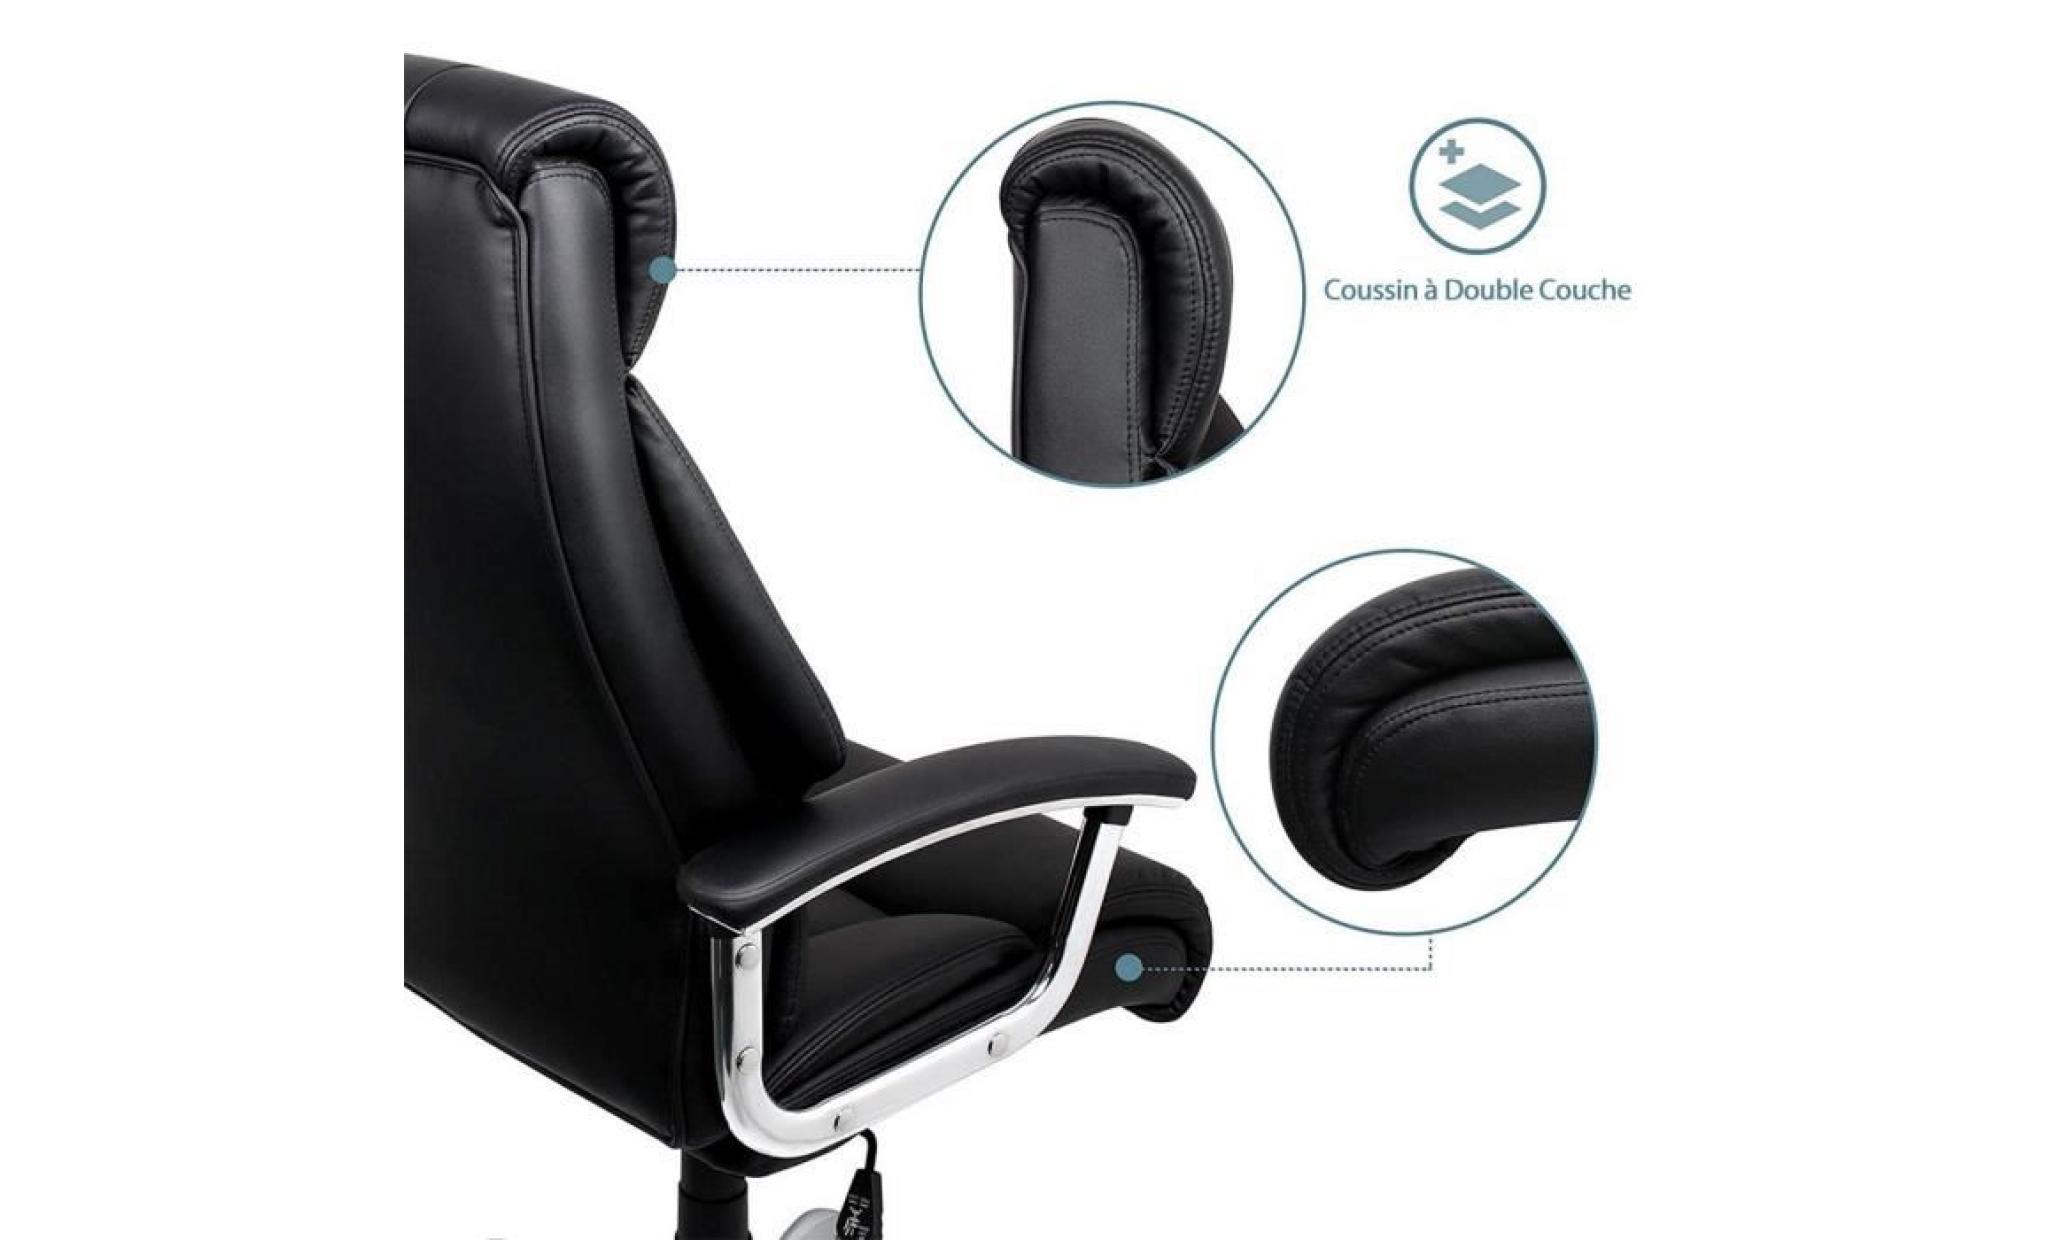 chaise de bureau confortable   fauteuil de bureau   hauteur réglable   intimate wm heart pas cher